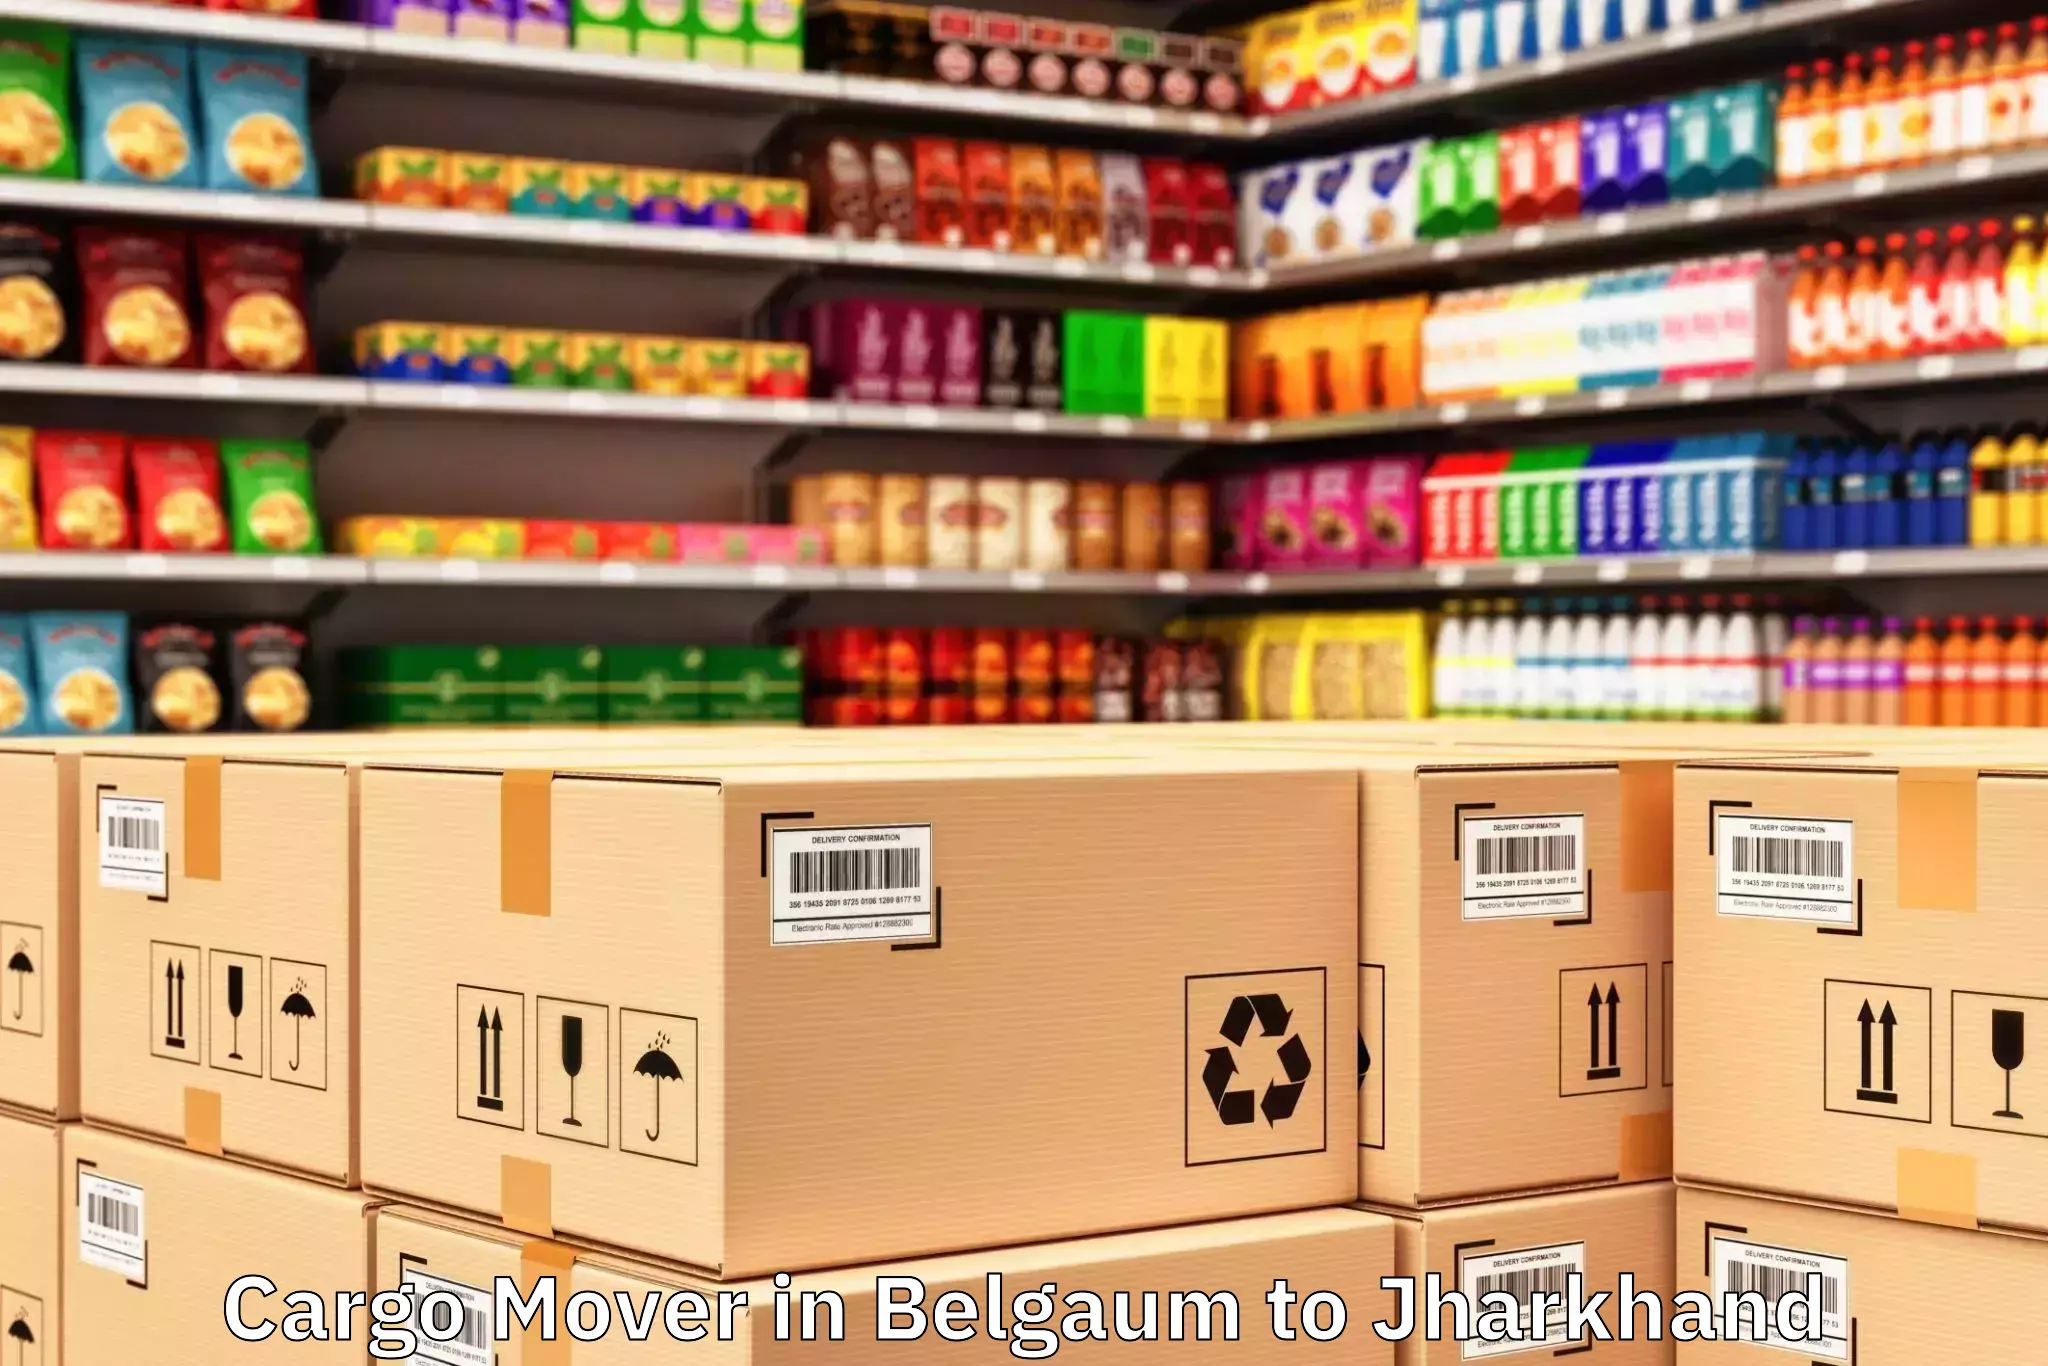 Discover Belgaum to Nawadih Cargo Mover